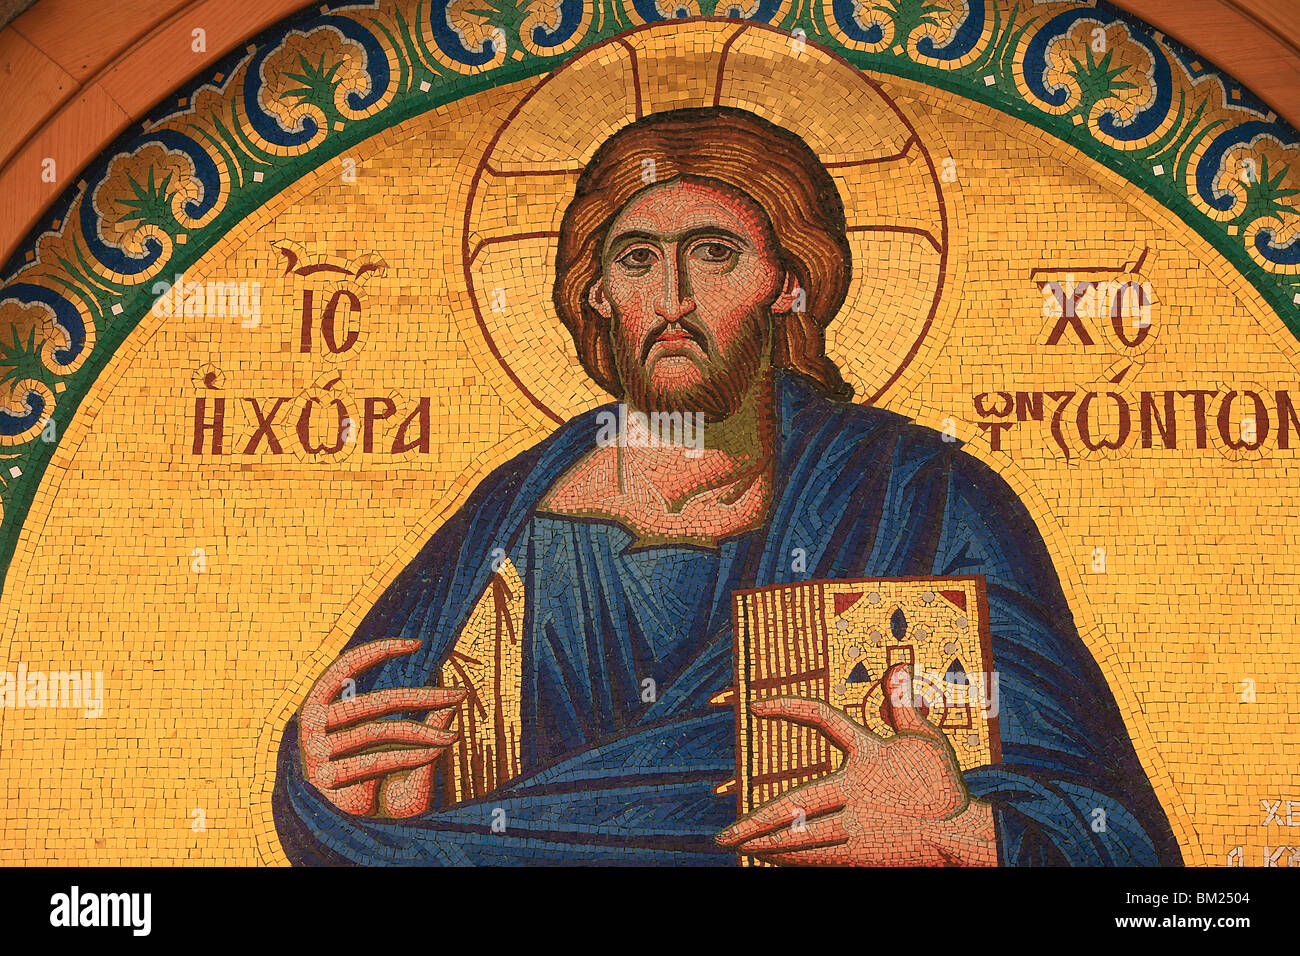 Icono ortodoxo griego representando a Jesucristo, Tesalónica, Macedonia, Grecia, Europa Foto de stock